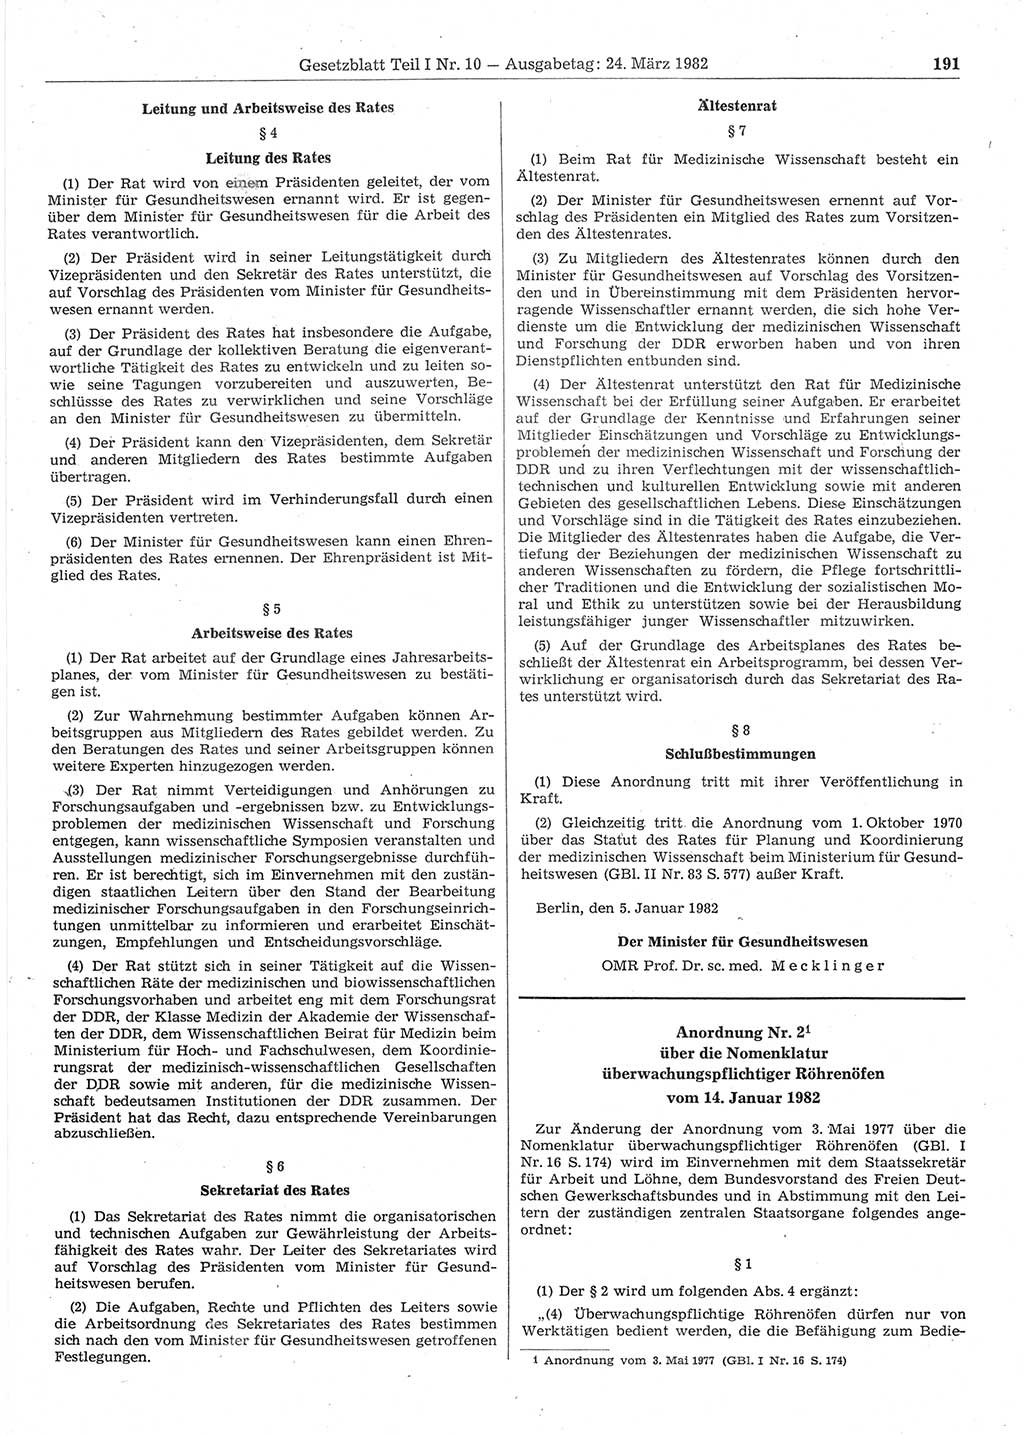 Gesetzblatt (GBl.) der Deutschen Demokratischen Republik (DDR) Teil Ⅰ 1982, Seite 191 (GBl. DDR Ⅰ 1982, S. 191)